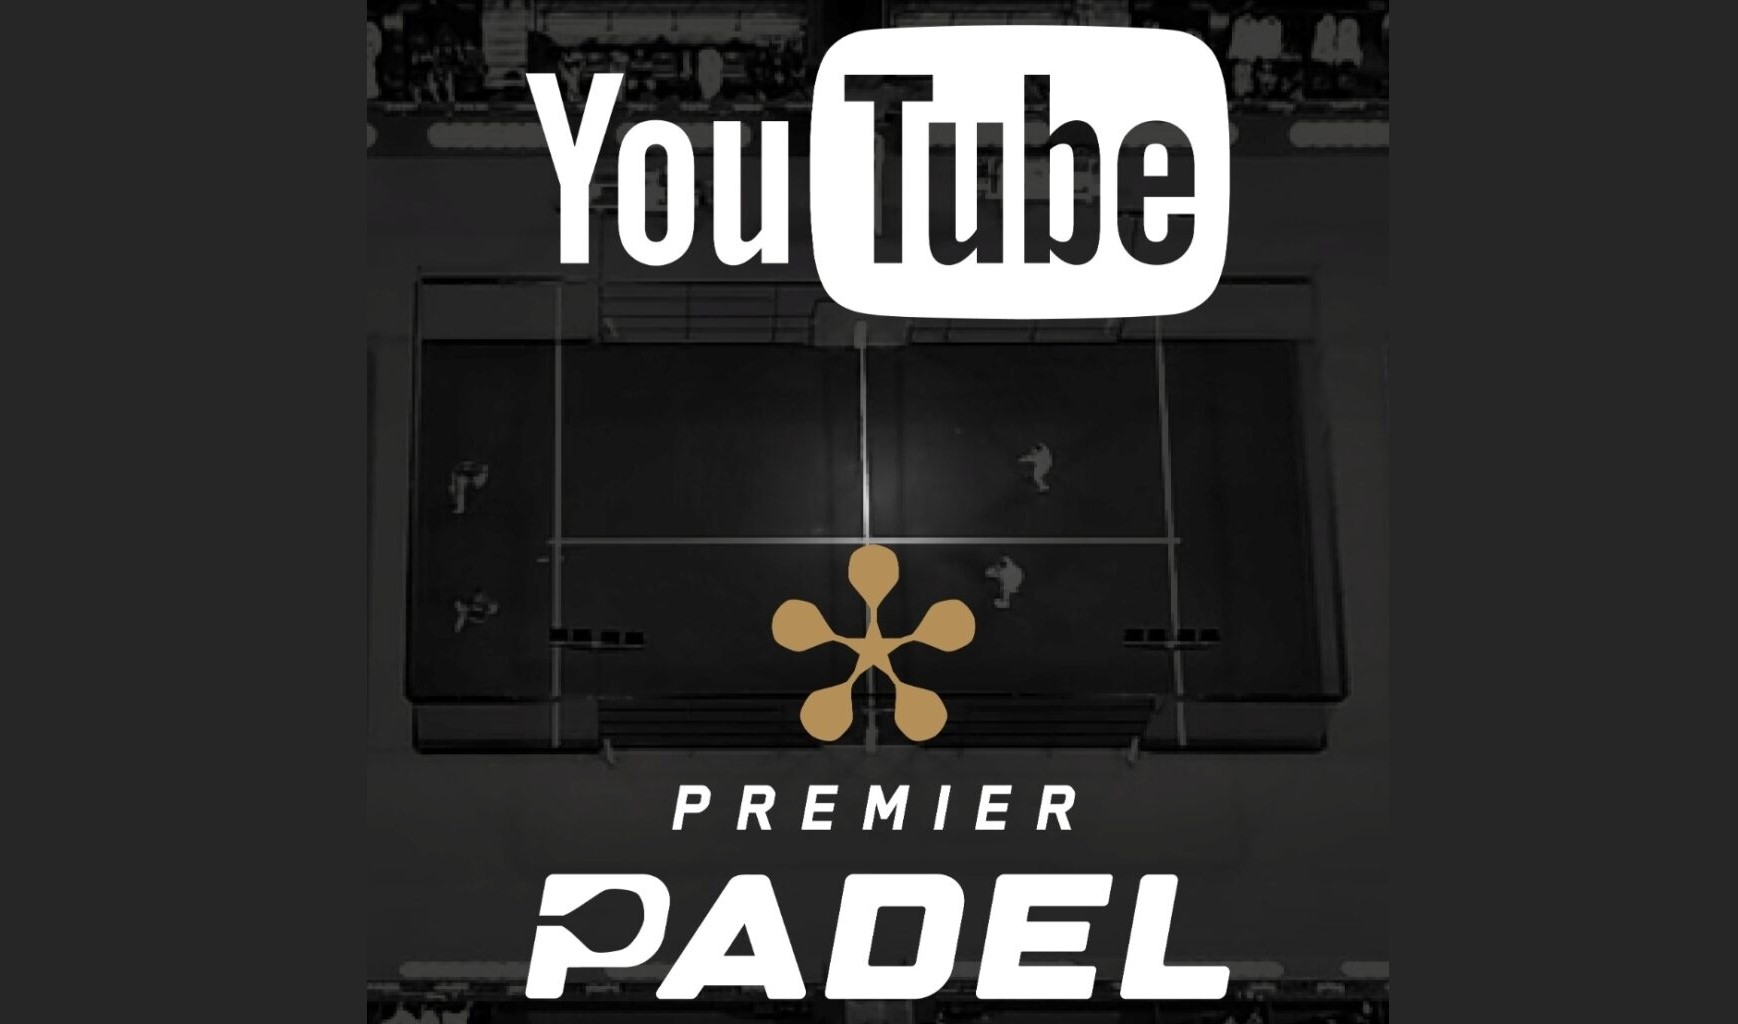 Premier Padel diffusé sur Youtube en Espagne